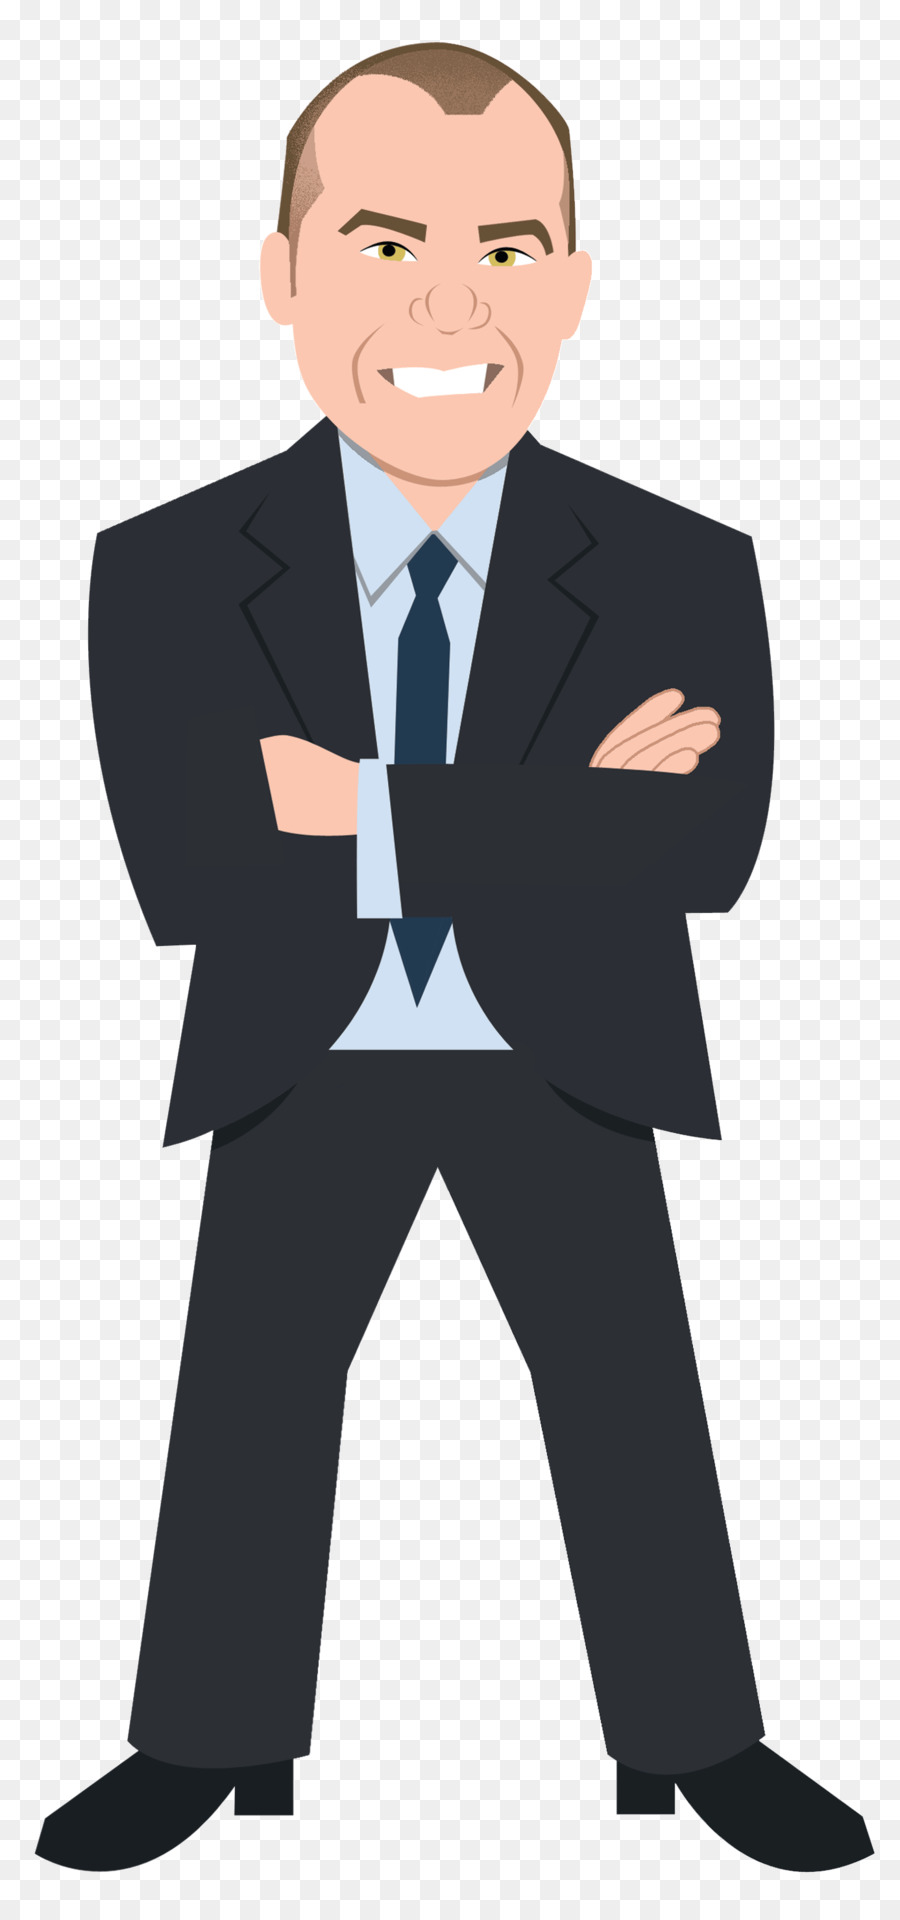 Andy Burton - Waterstone Mortgage Corporation Business Bielenberg Guida e corre Tuxedo M. - uomo d'affari nero png clipart businessperson